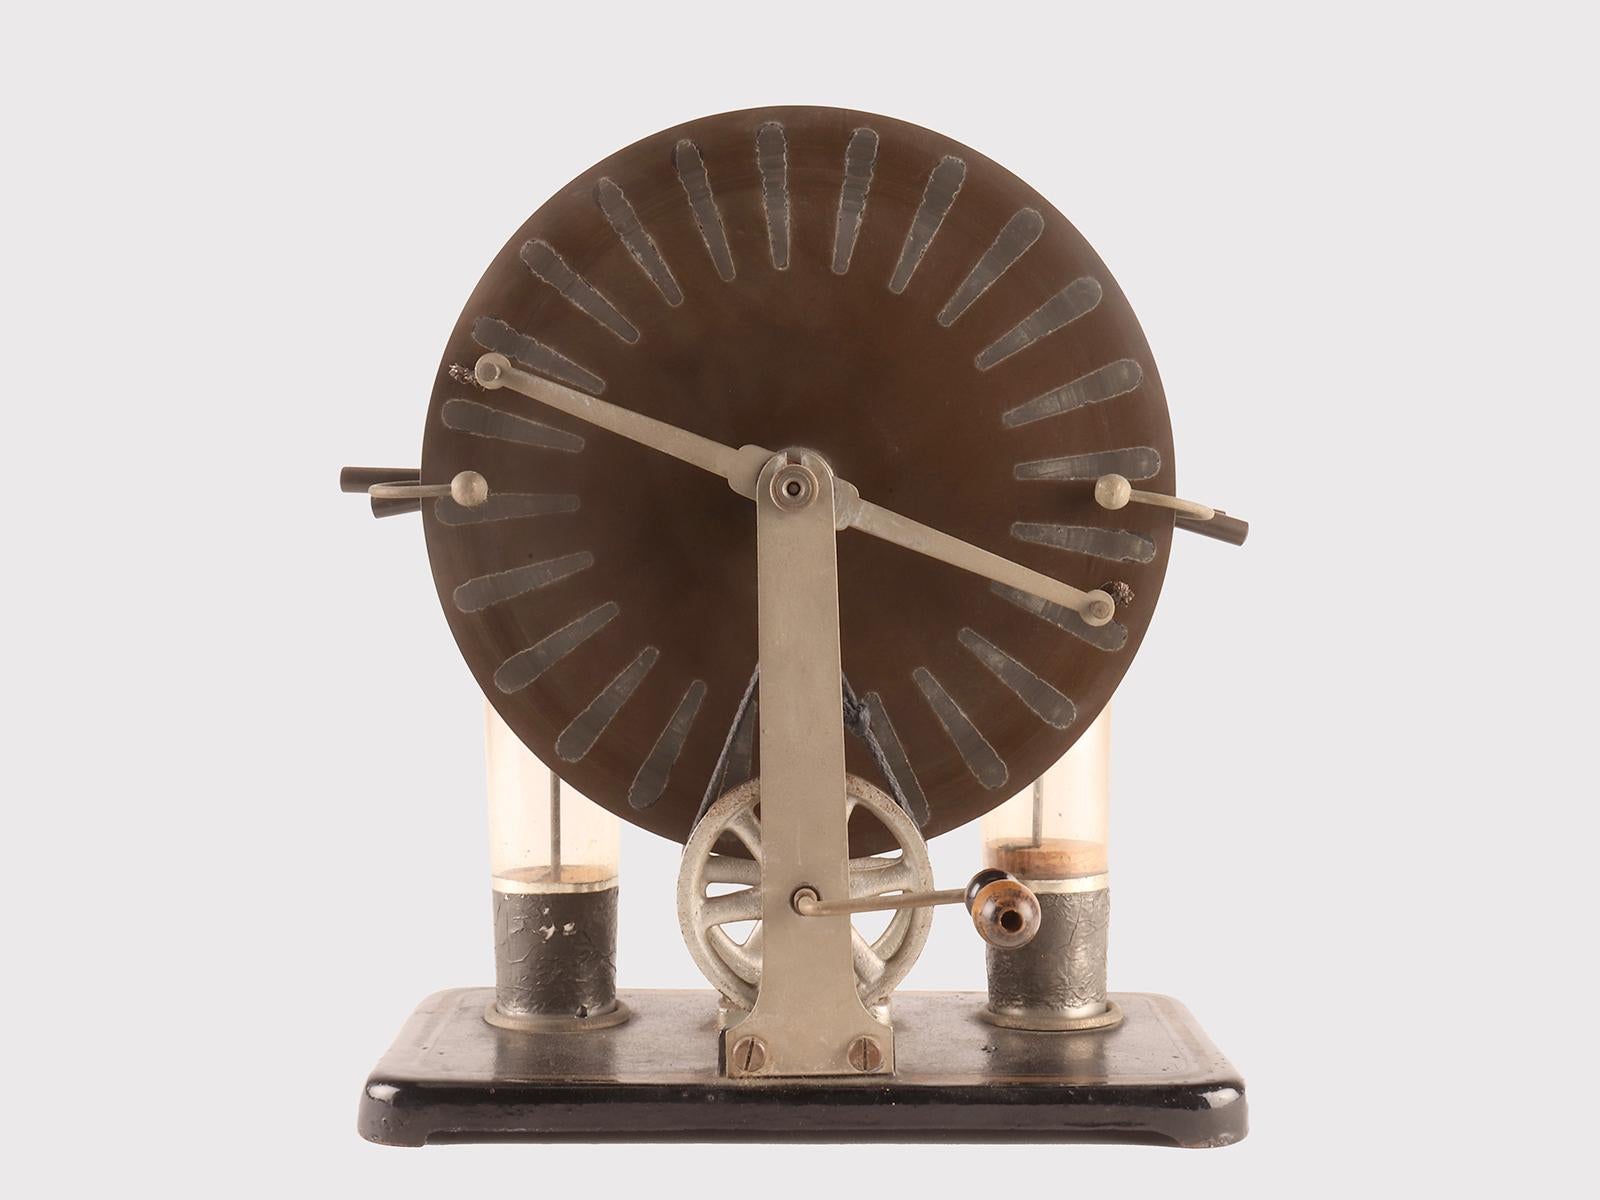 Machine électrostatique de Wimshurst, ingénieur et armateur britannique, conçue dans les années 1880, réalisée par Rinaldo Damiani, constructeur actif à Venise entre la fin du XIXe siècle et le début du XXe siècle. Ce générateur était l'un des plus